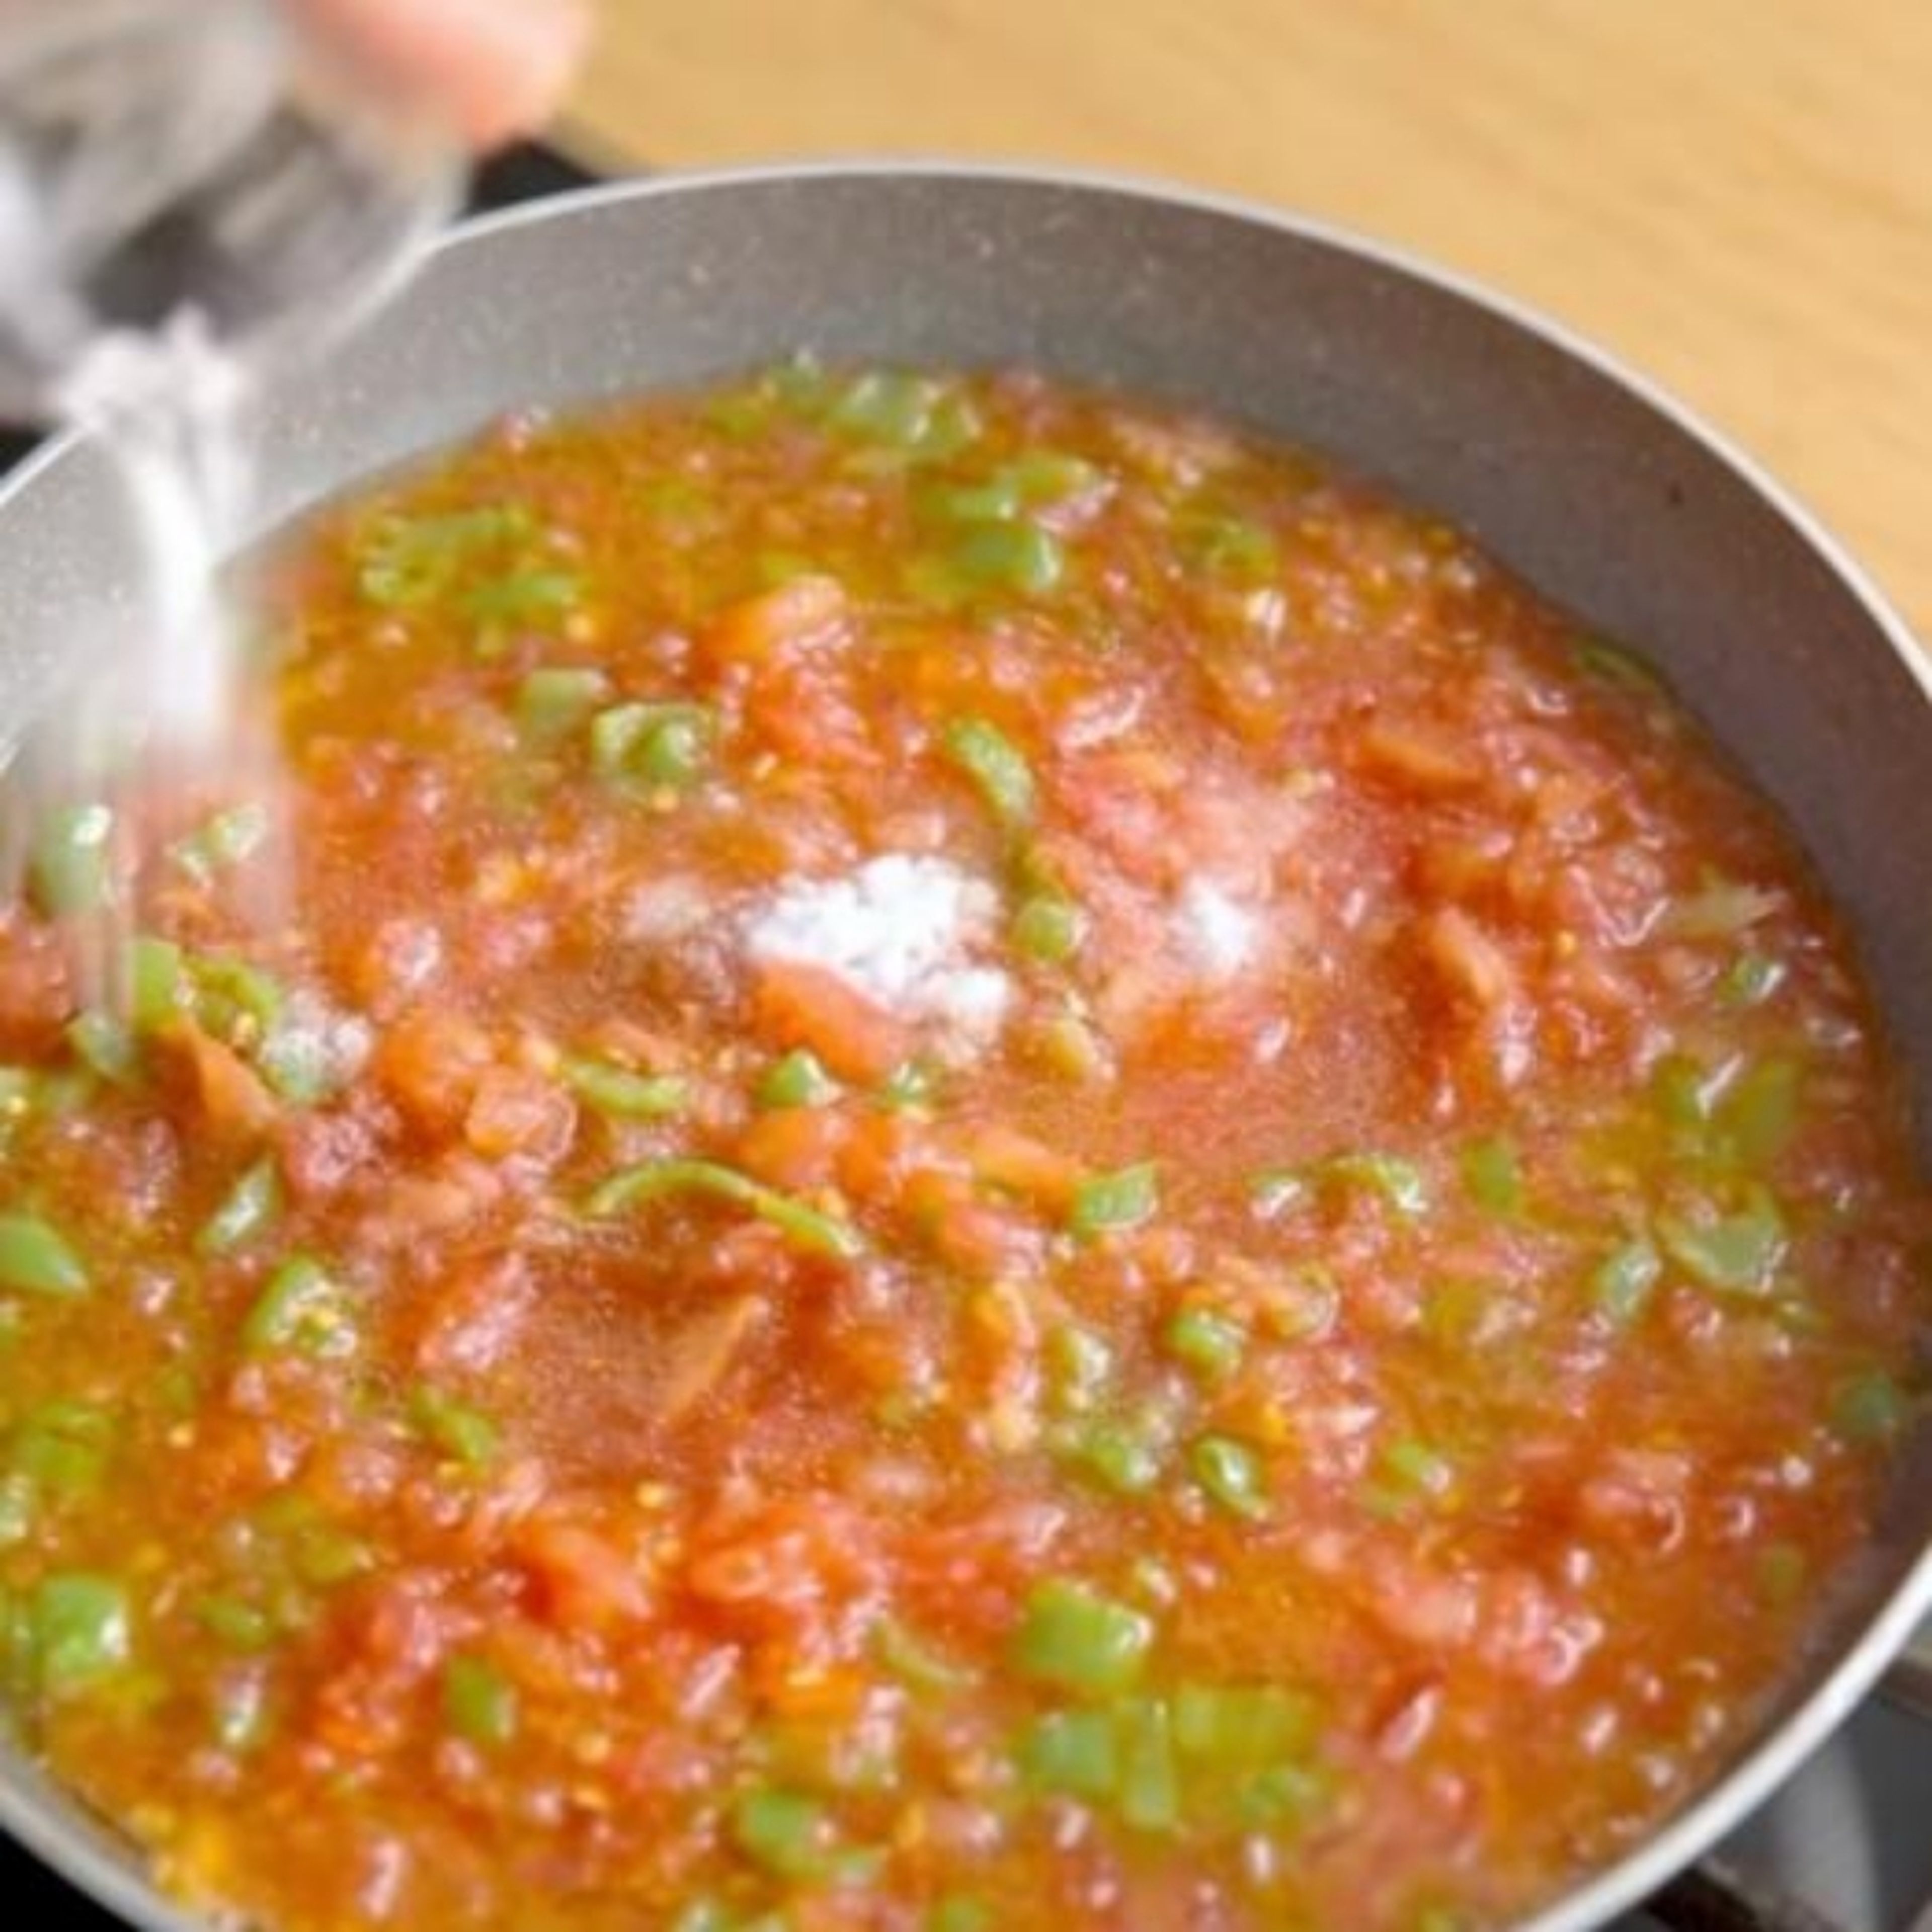 Die Tomaten Schälen und hacken. Gehackte Tomaten, Salz, Pfeffer und Paprikapulver in die Pfanne geben und kurz mischen. Anschließend ca. 10 min köcheln lassen bis die Tomaten weich geworden sind.